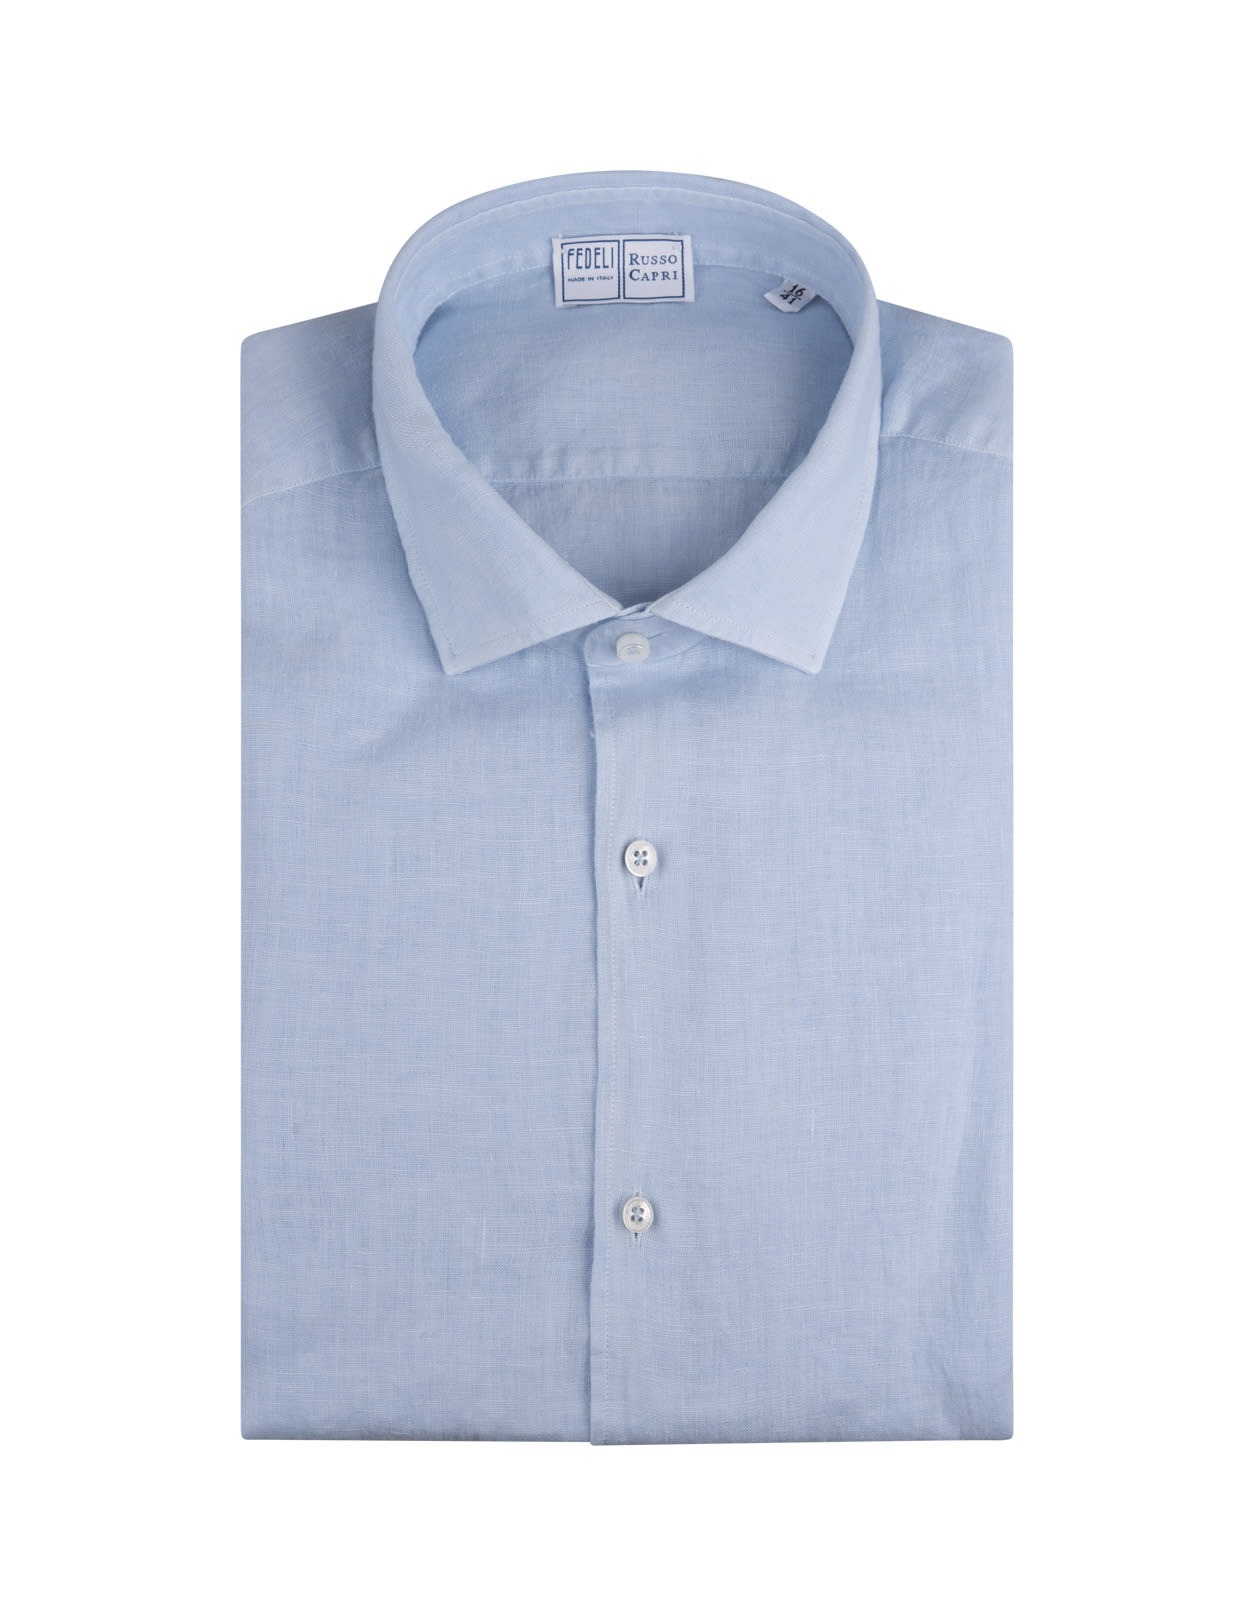 Shop Fedeli Classic Shirt In Lightweight Light Blue Cotton